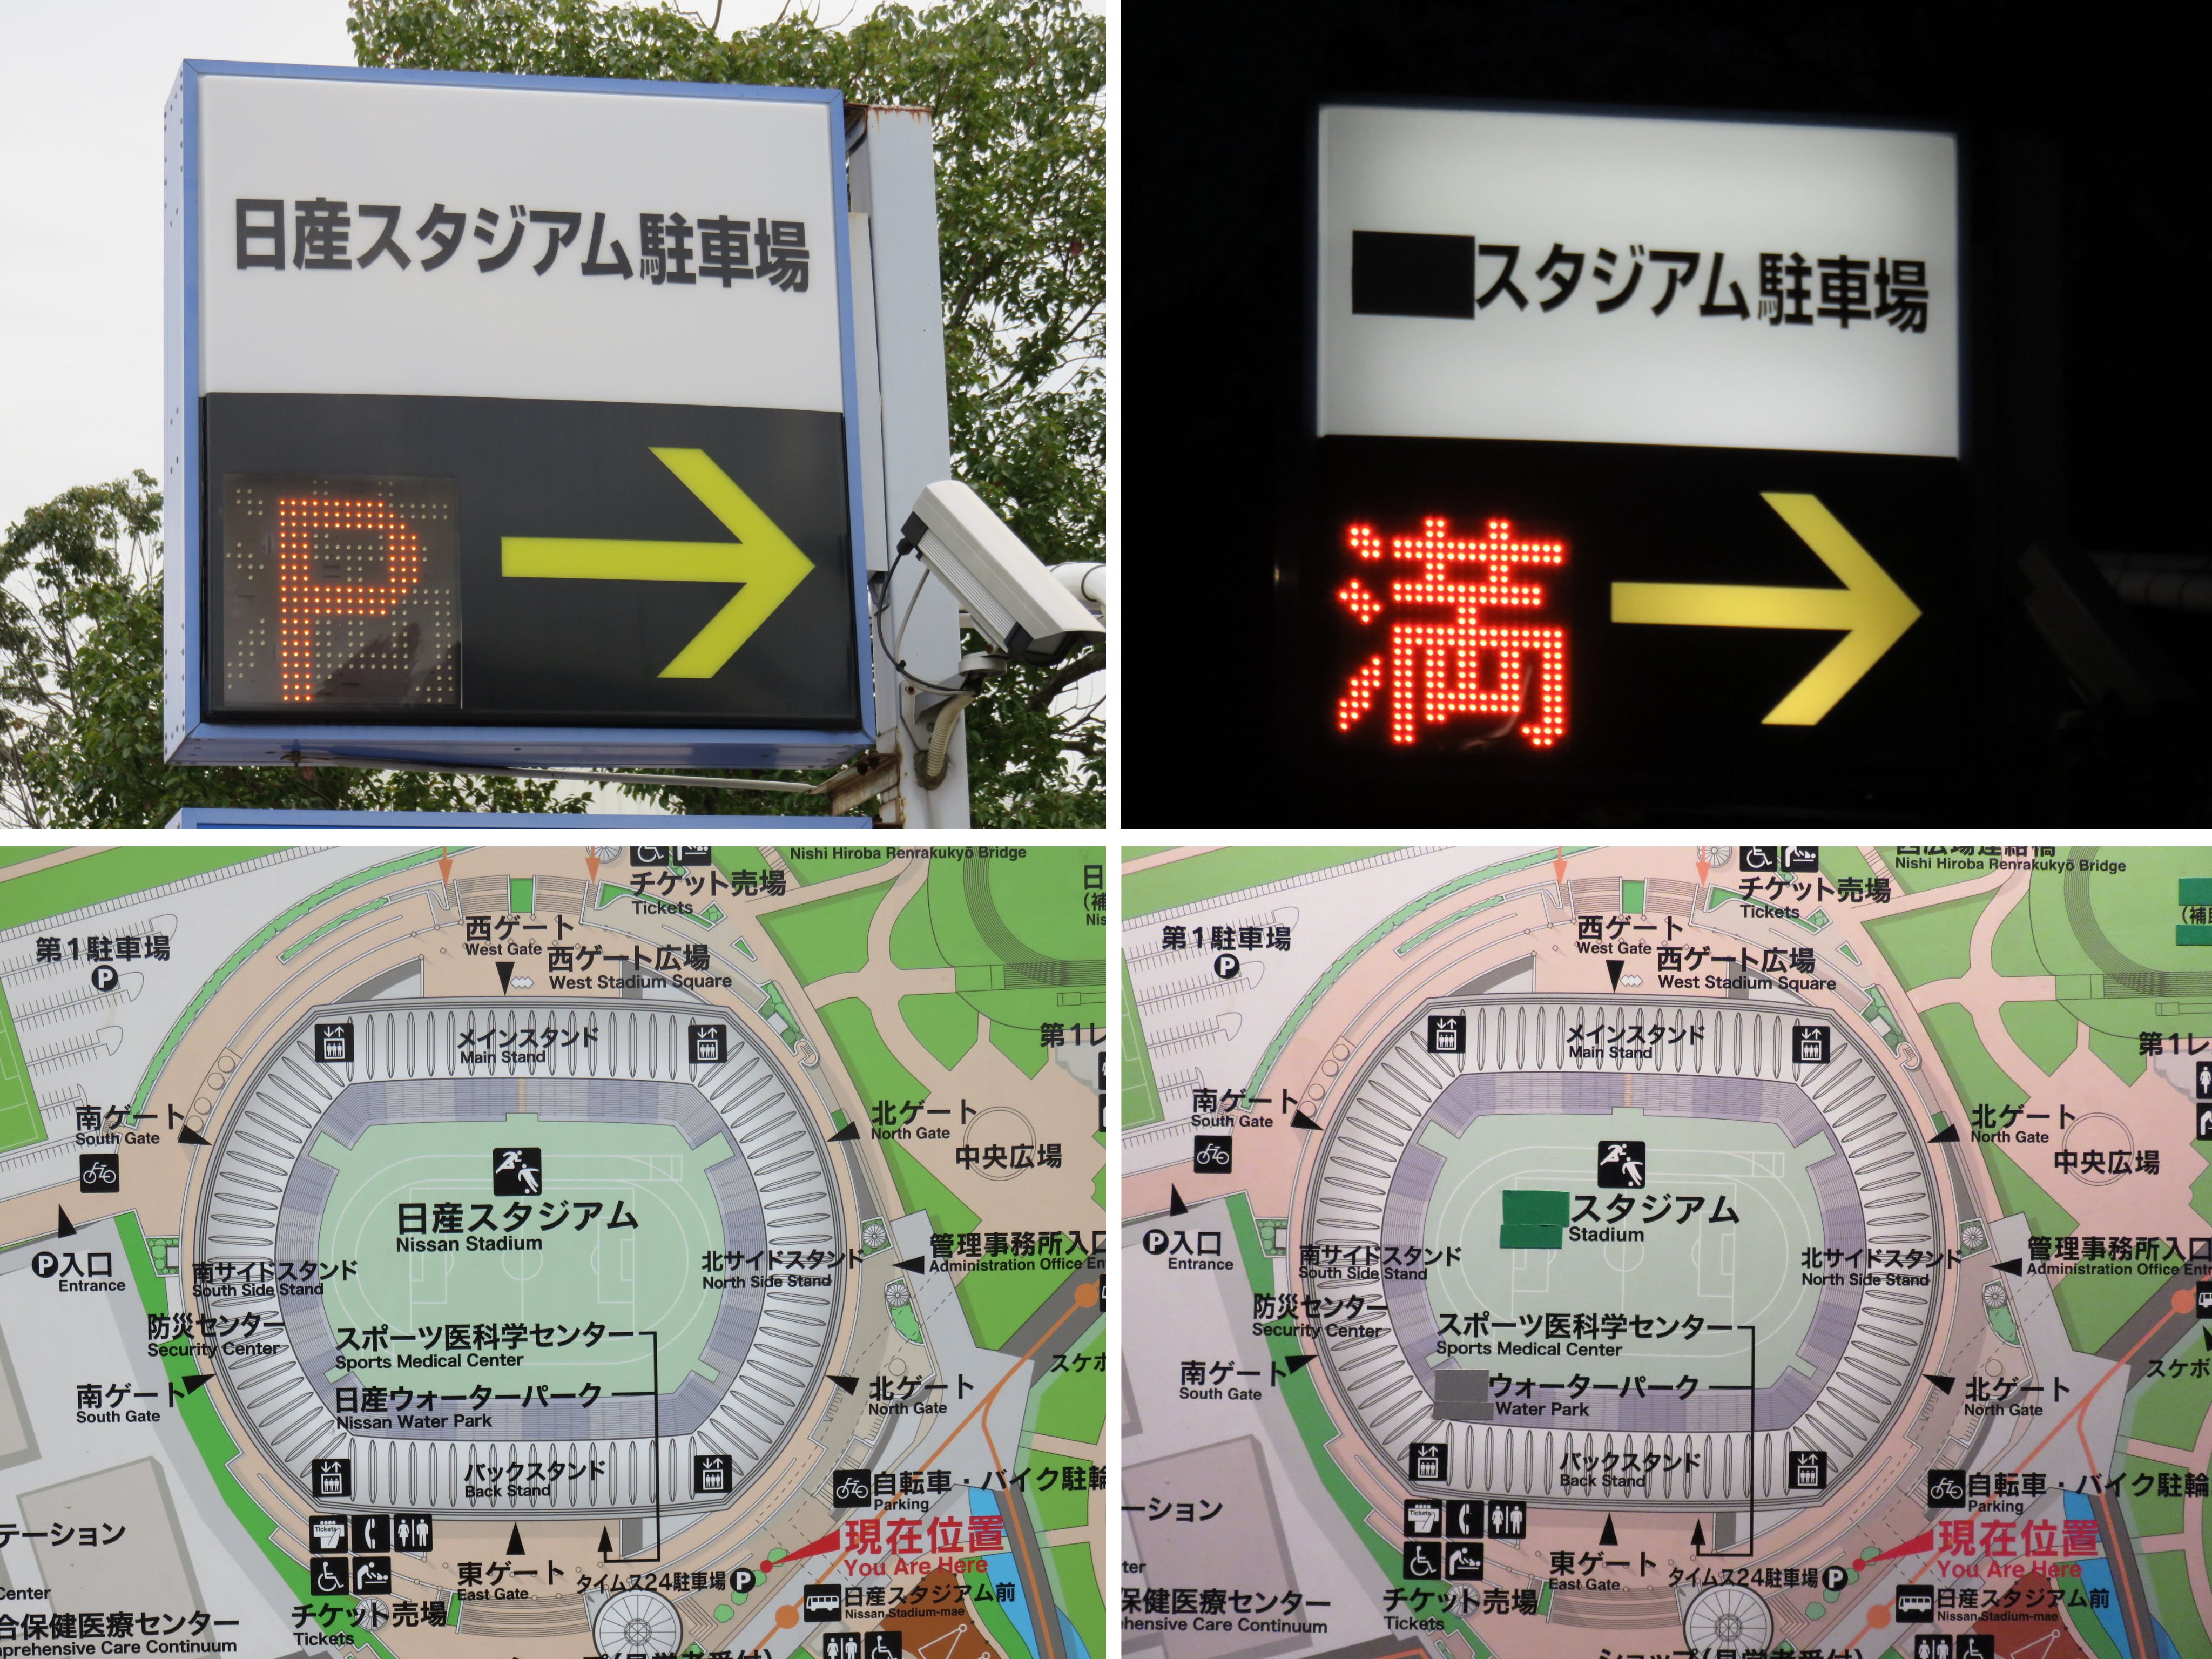 Yoshio Ichikawa ｆｉｆａクラブワールドカップ 12 18 Fifaの試合が行われる時 日産スタジアムのある 新横浜公園から日産の文字がことごとく消えてしまう事を知っていますか 先月は消されていなかったが 02年の Fifaワールドカップの時は道路の案内